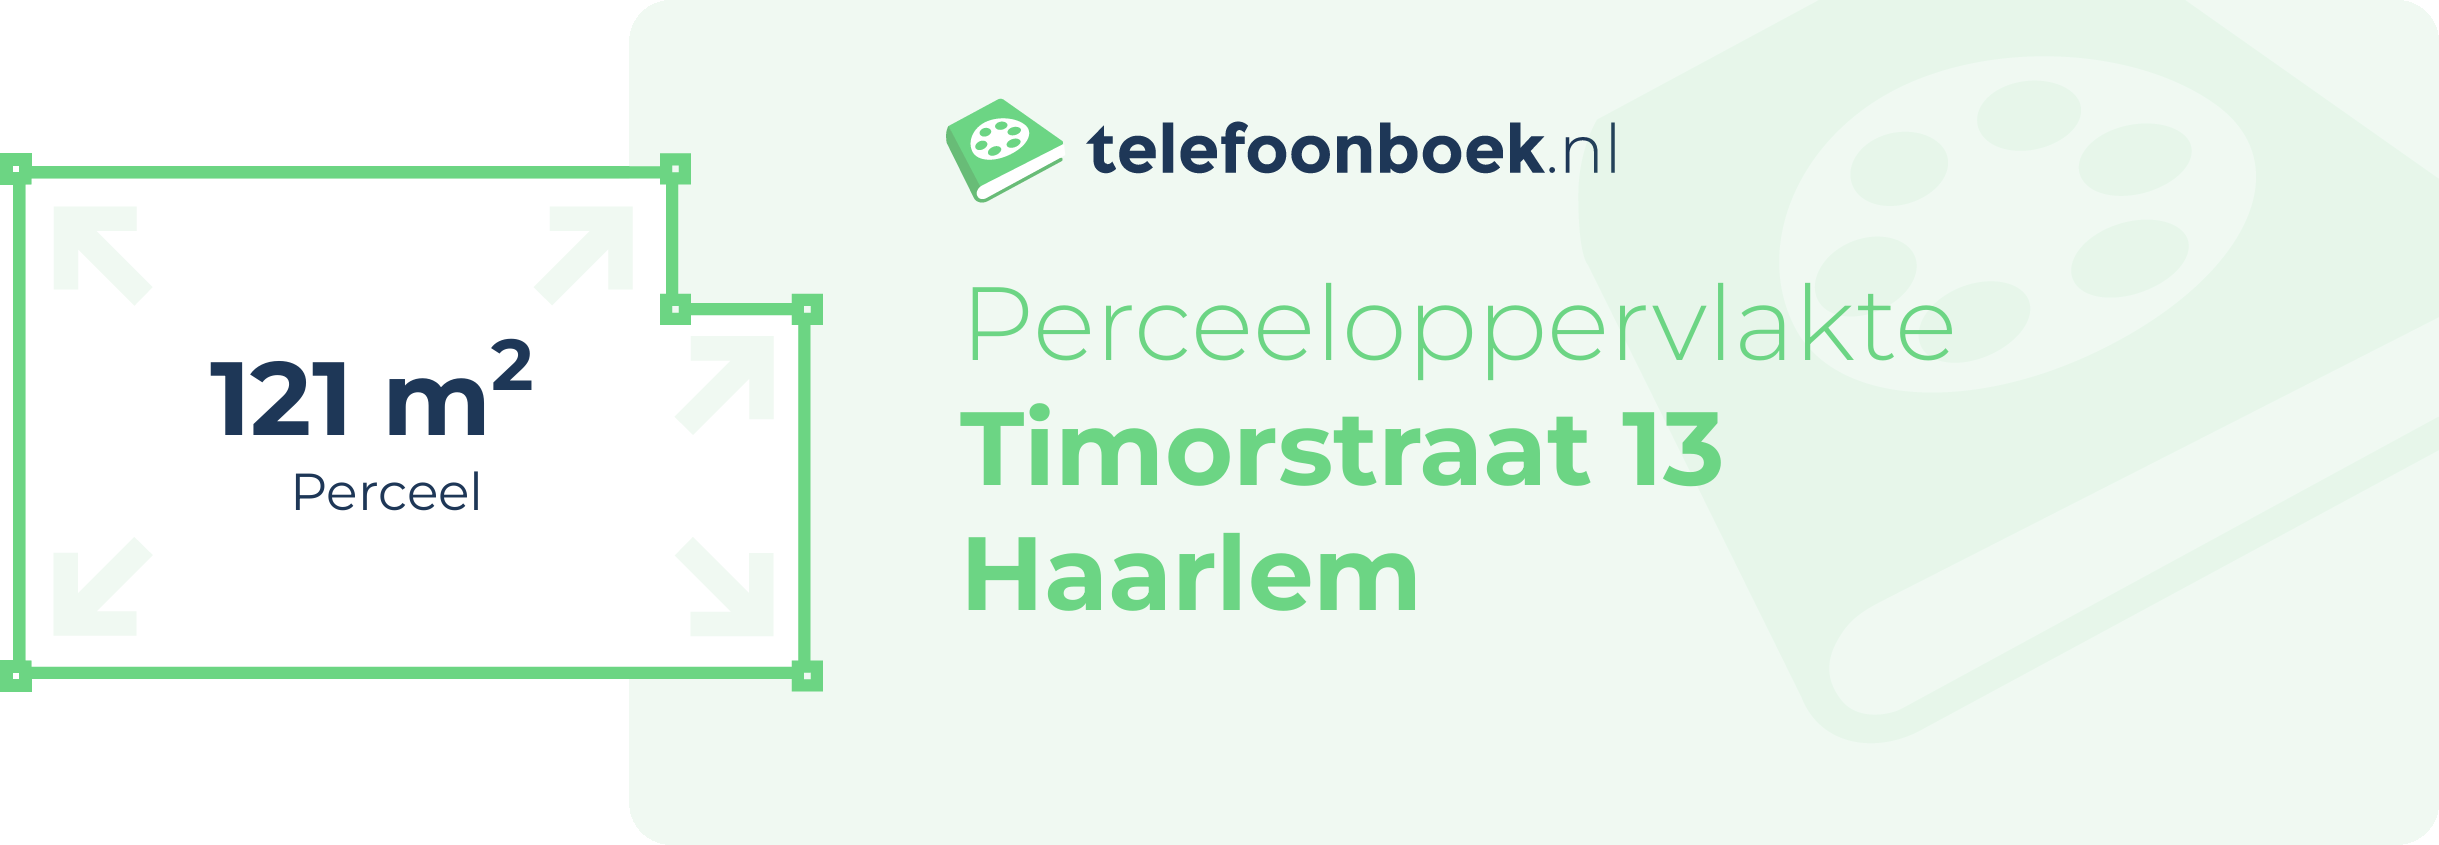 Perceeloppervlakte Timorstraat 13 Haarlem